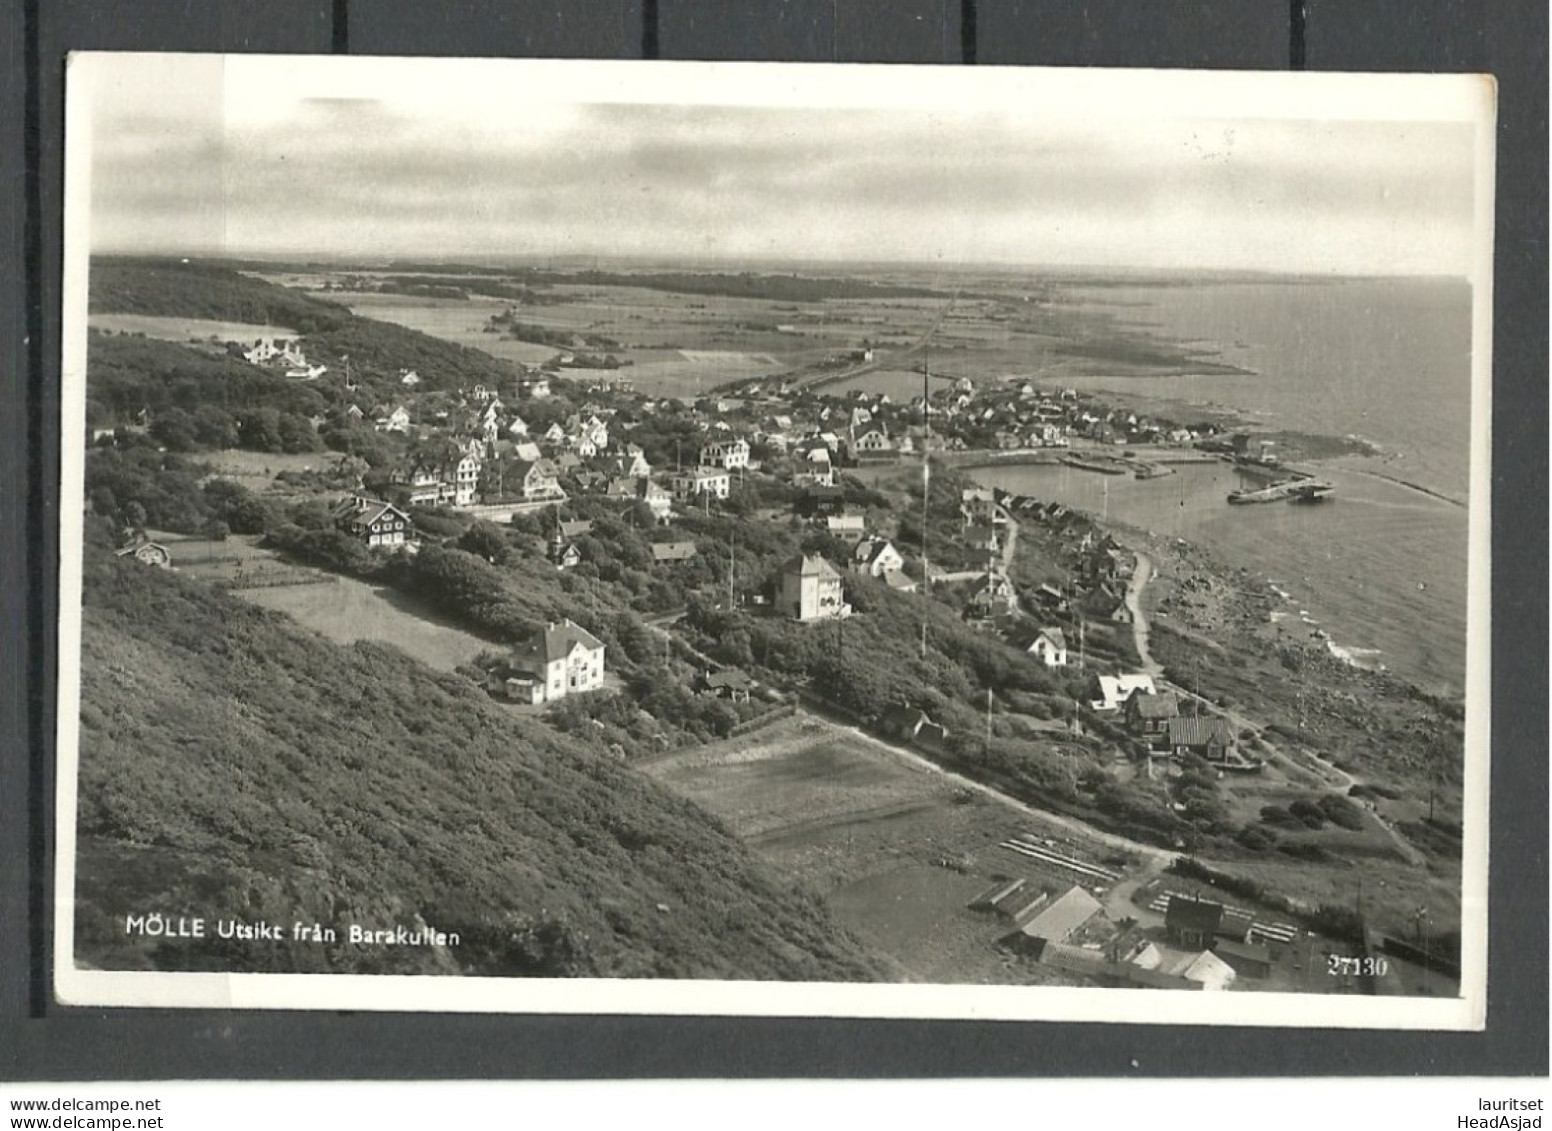 SWEDEN - MÖLLE - View From Barakullen - Photo Post Card, Unused - Schweden